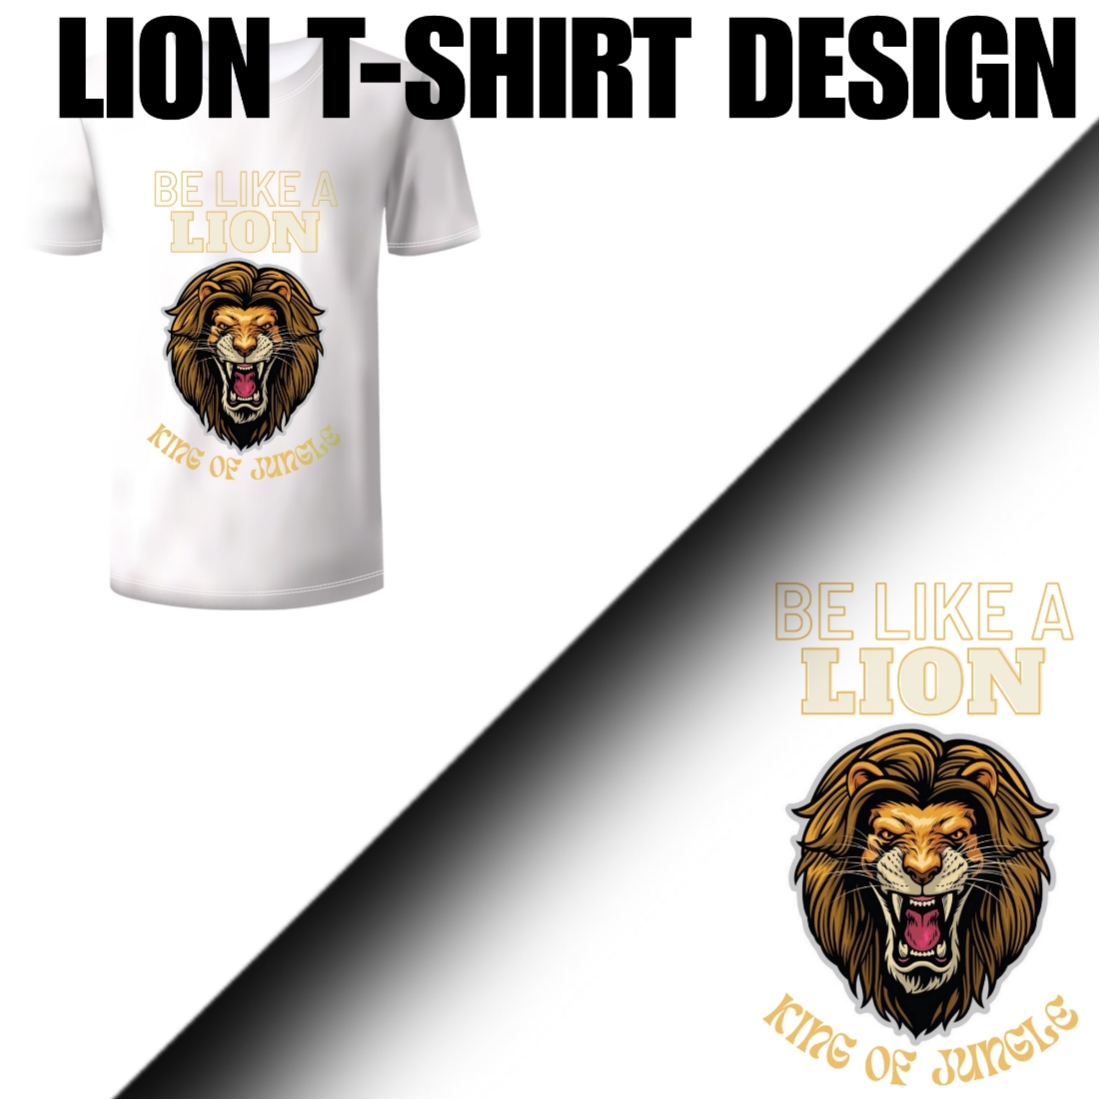 Lion t - shirt design with a lion's head.